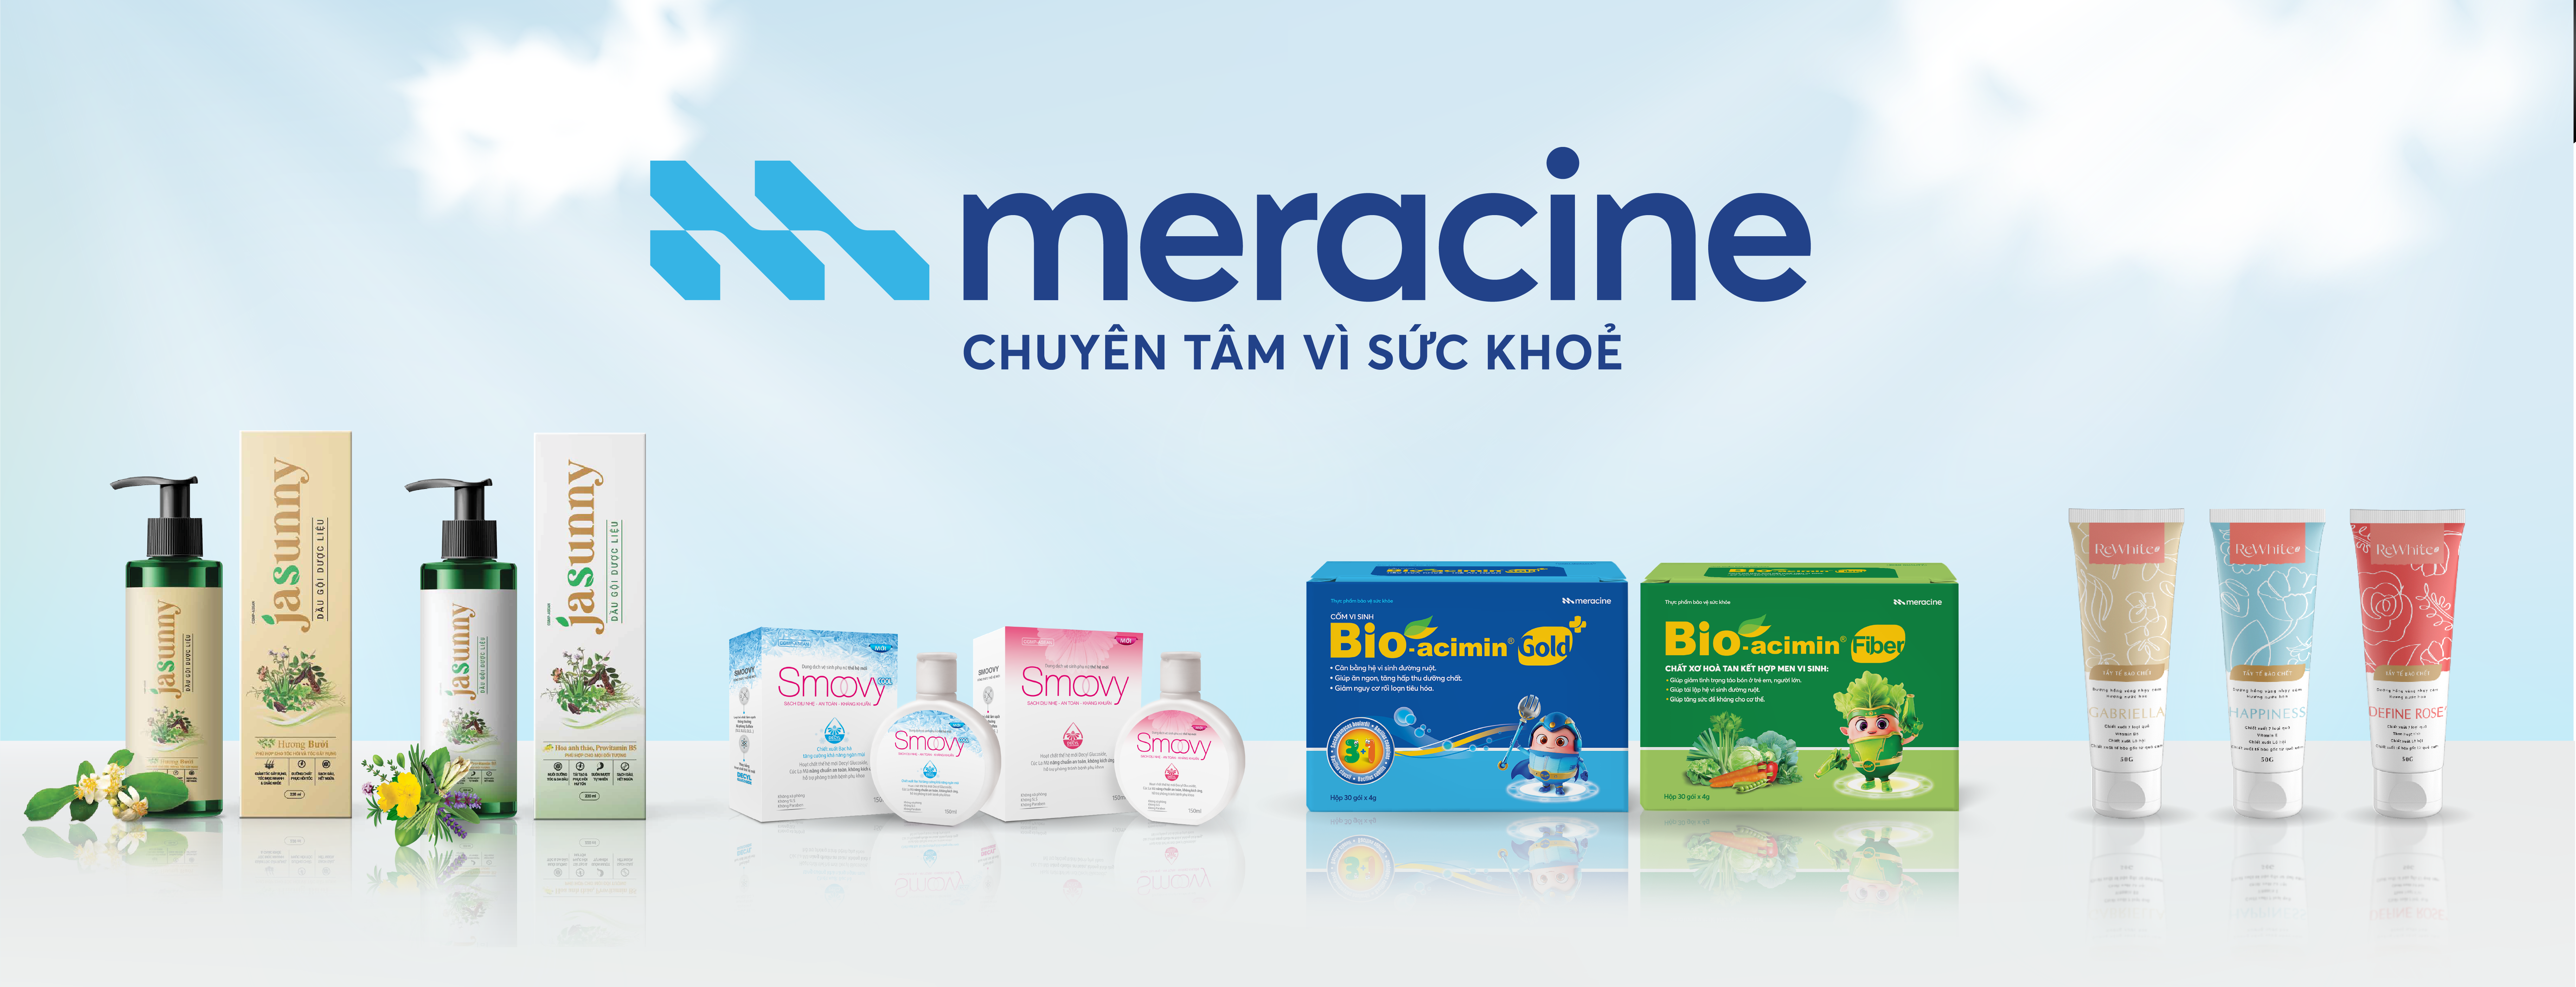 Các sản phẩm tiêu biểu của Dược phẩm Meracine: Cốm vi sinh Bio-acimin, dầu gội Jasunny, dung dịch vệ sinh Smoovy, gel tẩy tế bào chết Rewhitez